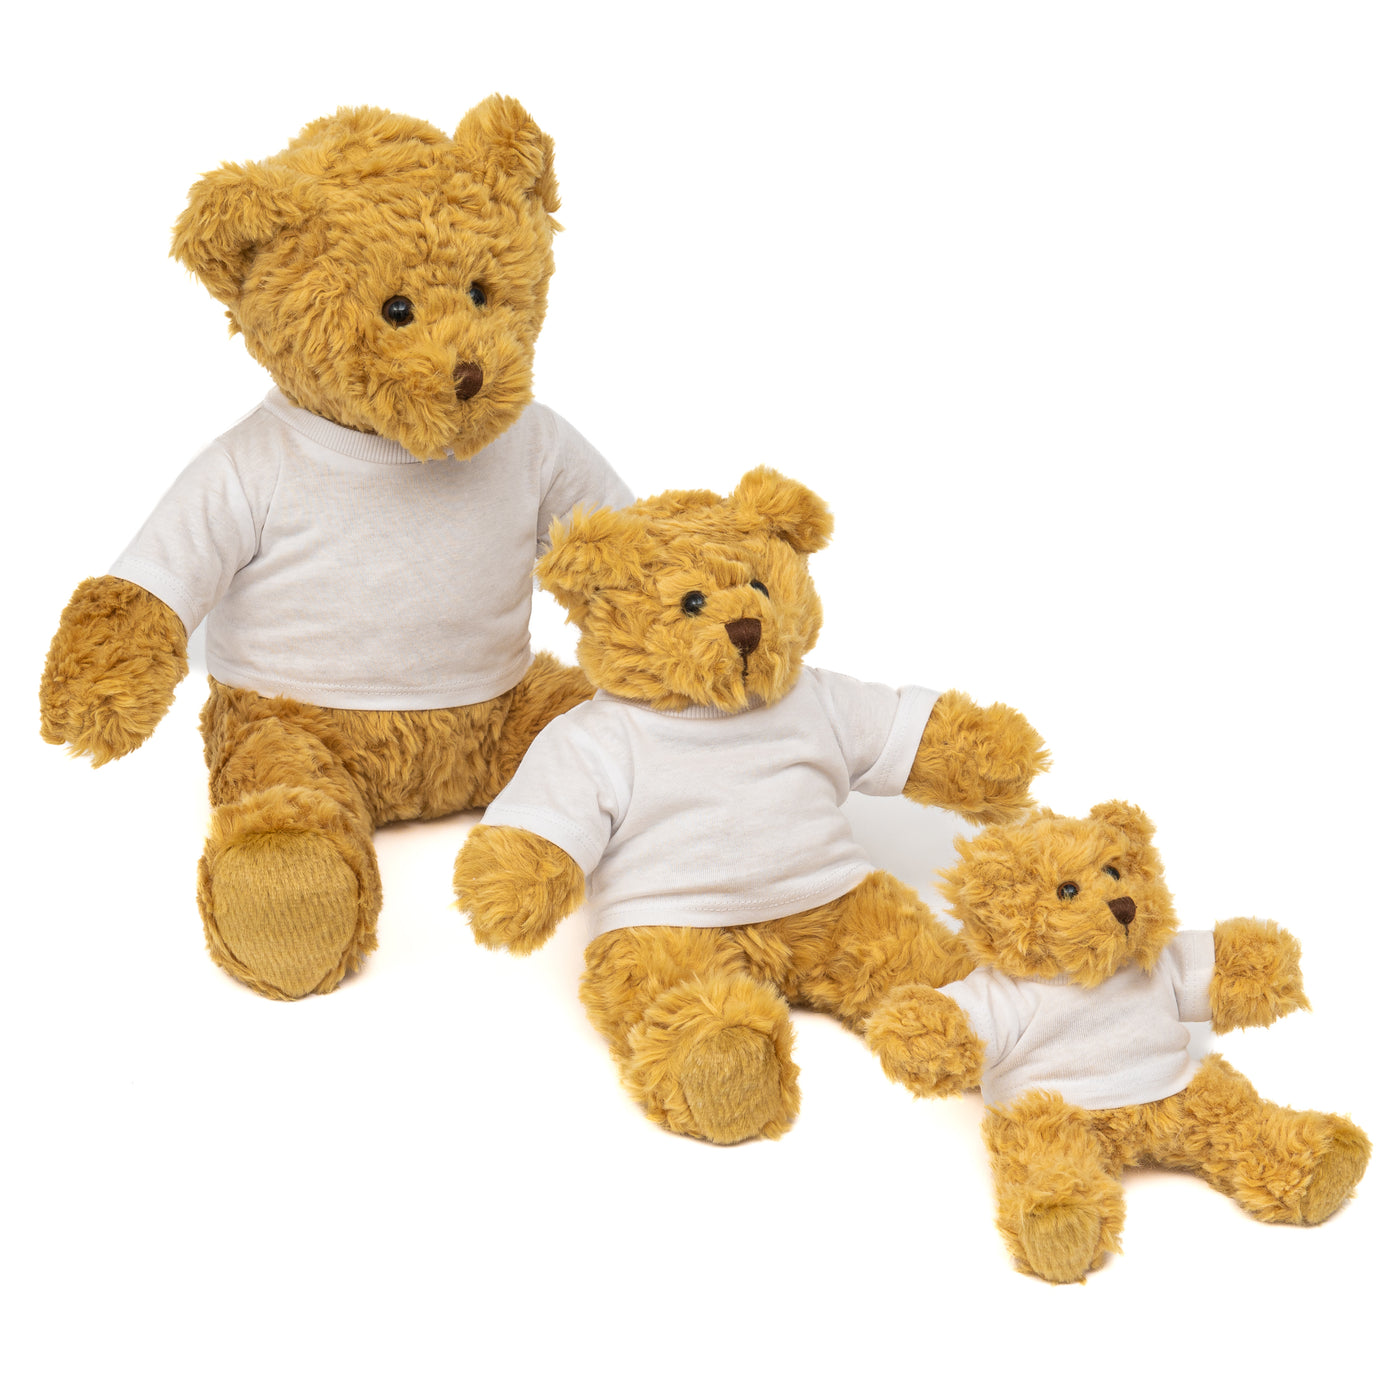 Personalised Teddy Bears - Siblings Trio - Biggest, Big, Littlest